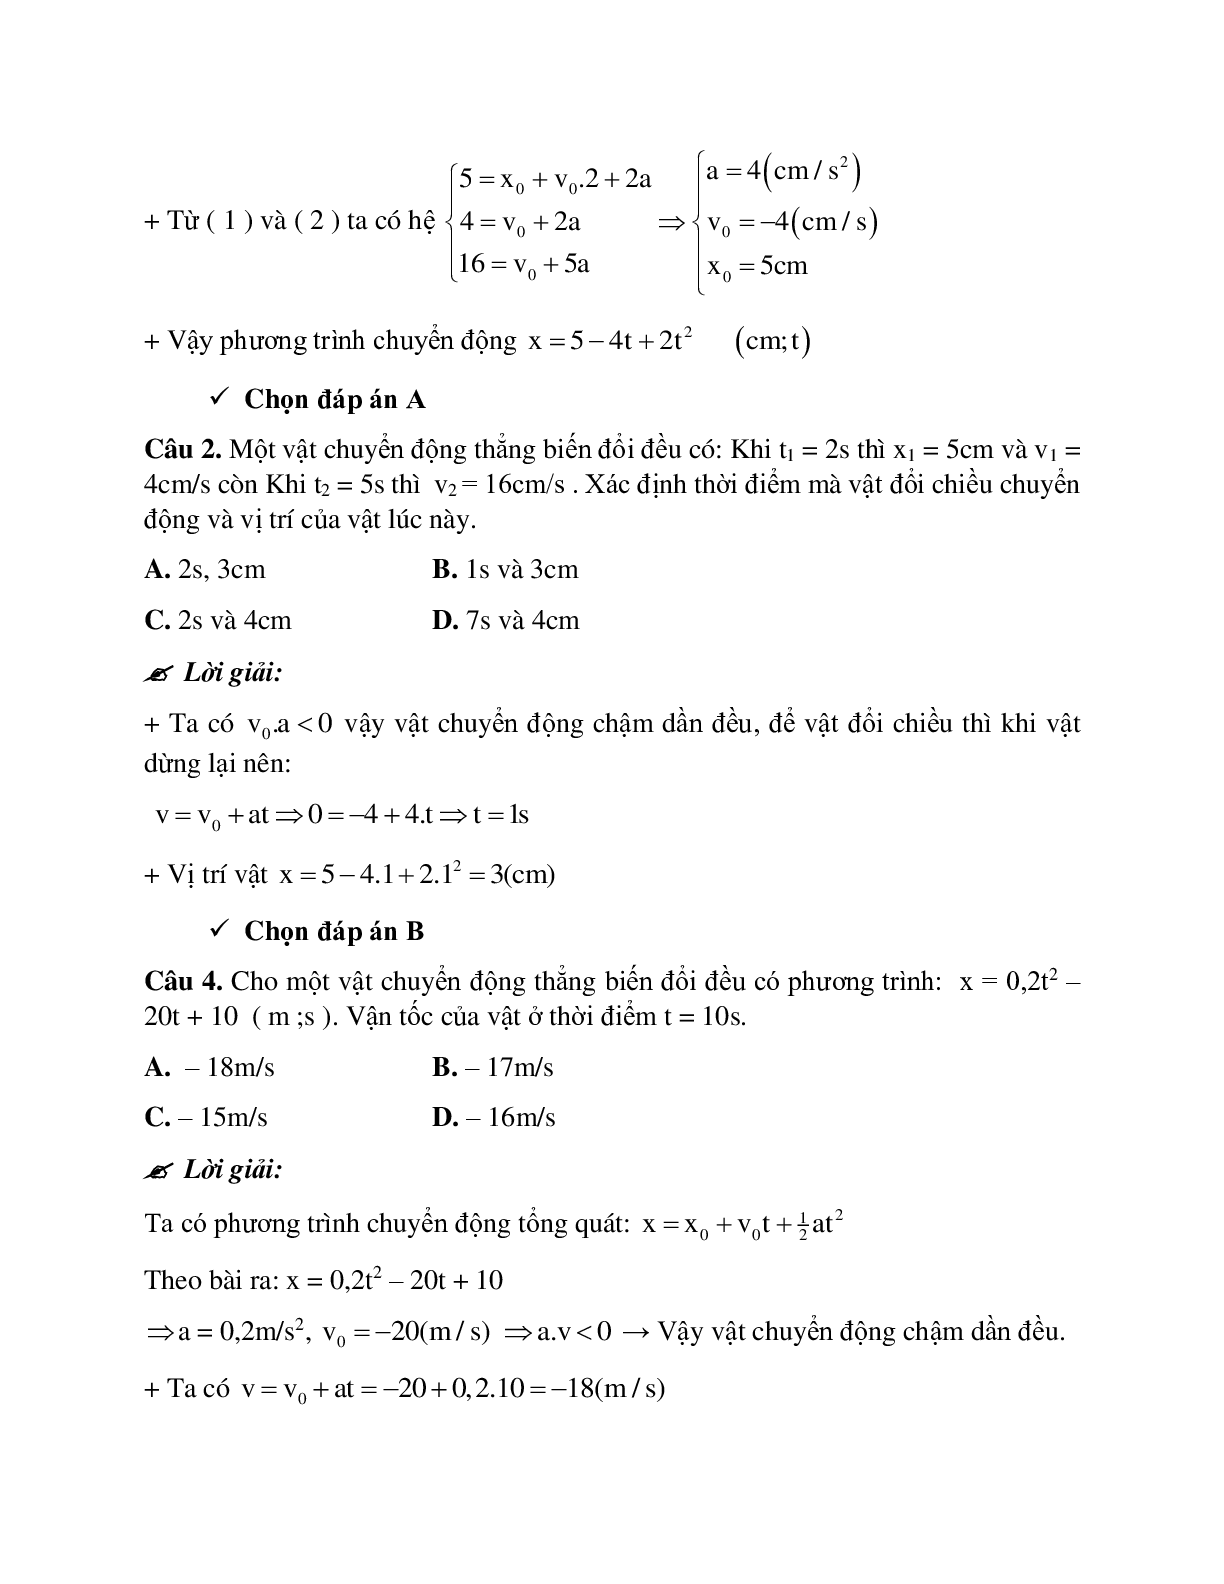 Bài tập về viết phương trình chuyển động thẳng biến đổi đều có đáp án (trang 6)